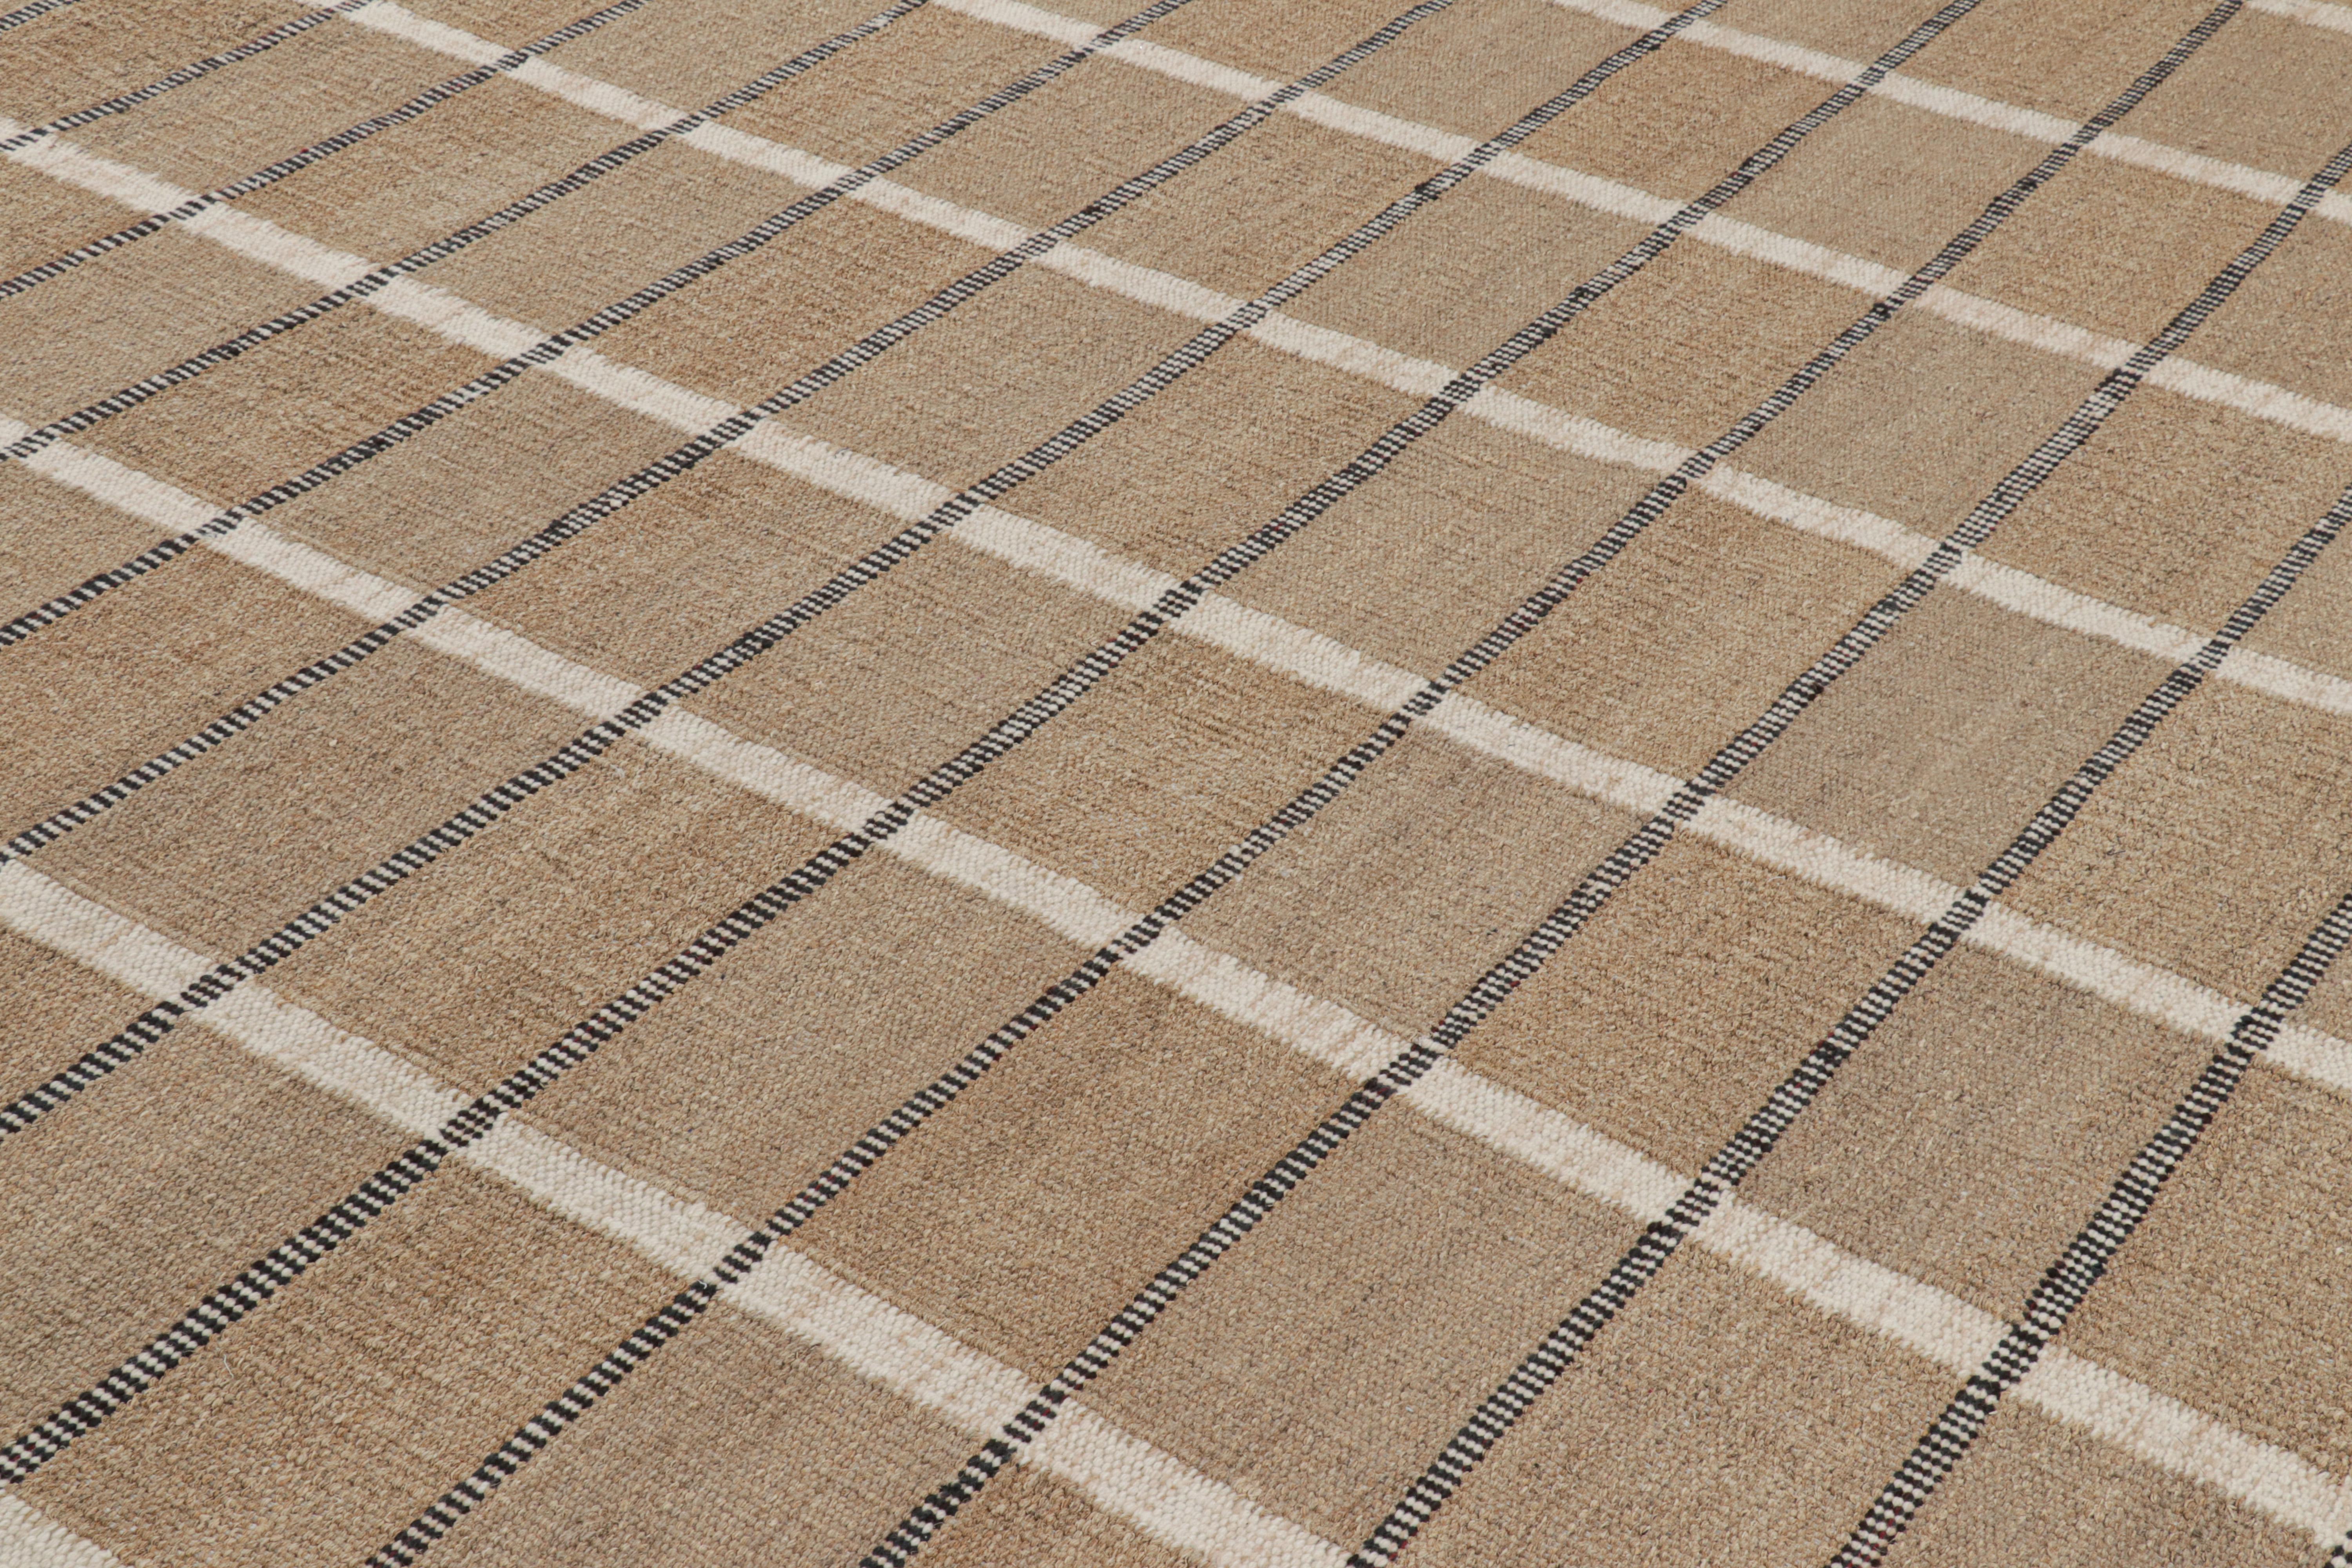 Ce tapis 10x14 de style suédois, tissé à la main en chanvre, fait partie de la ligne Nature de la collection de tapis scandinaves de Rug & Kilim, inspirée par les designs du milieu du siècle de l'esthétique minimaliste acclamée.

Sur le Design :